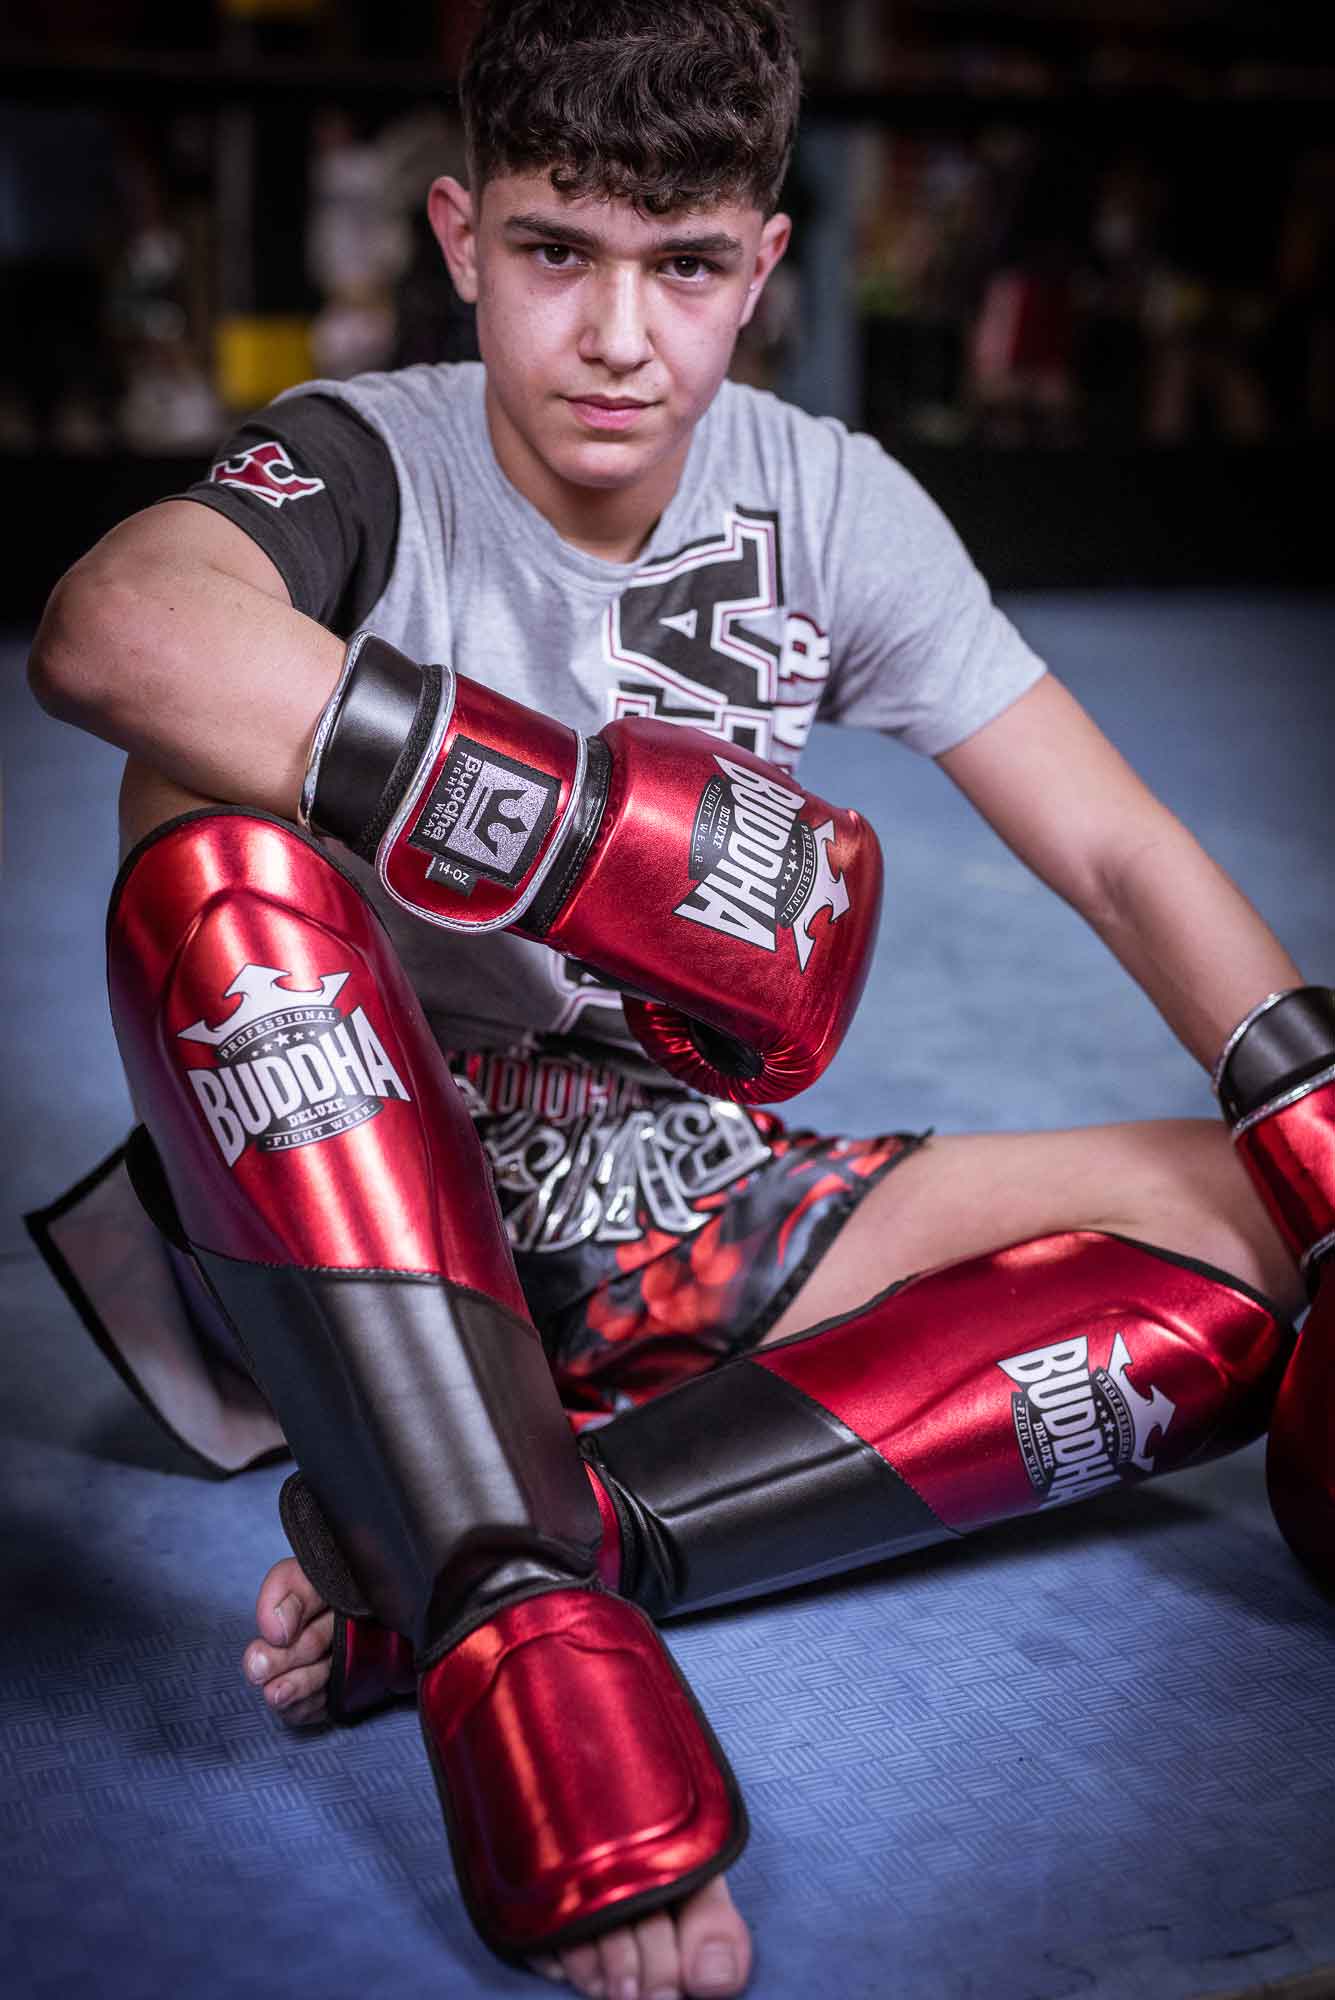 Espinilleras Kick Boxing,Espinilleras Kick Boxing Muay Thai MMA  Protección,Cuero Empeine Artes Marciales Entrenamiento Boxeo Sparring  Kárate y Combate